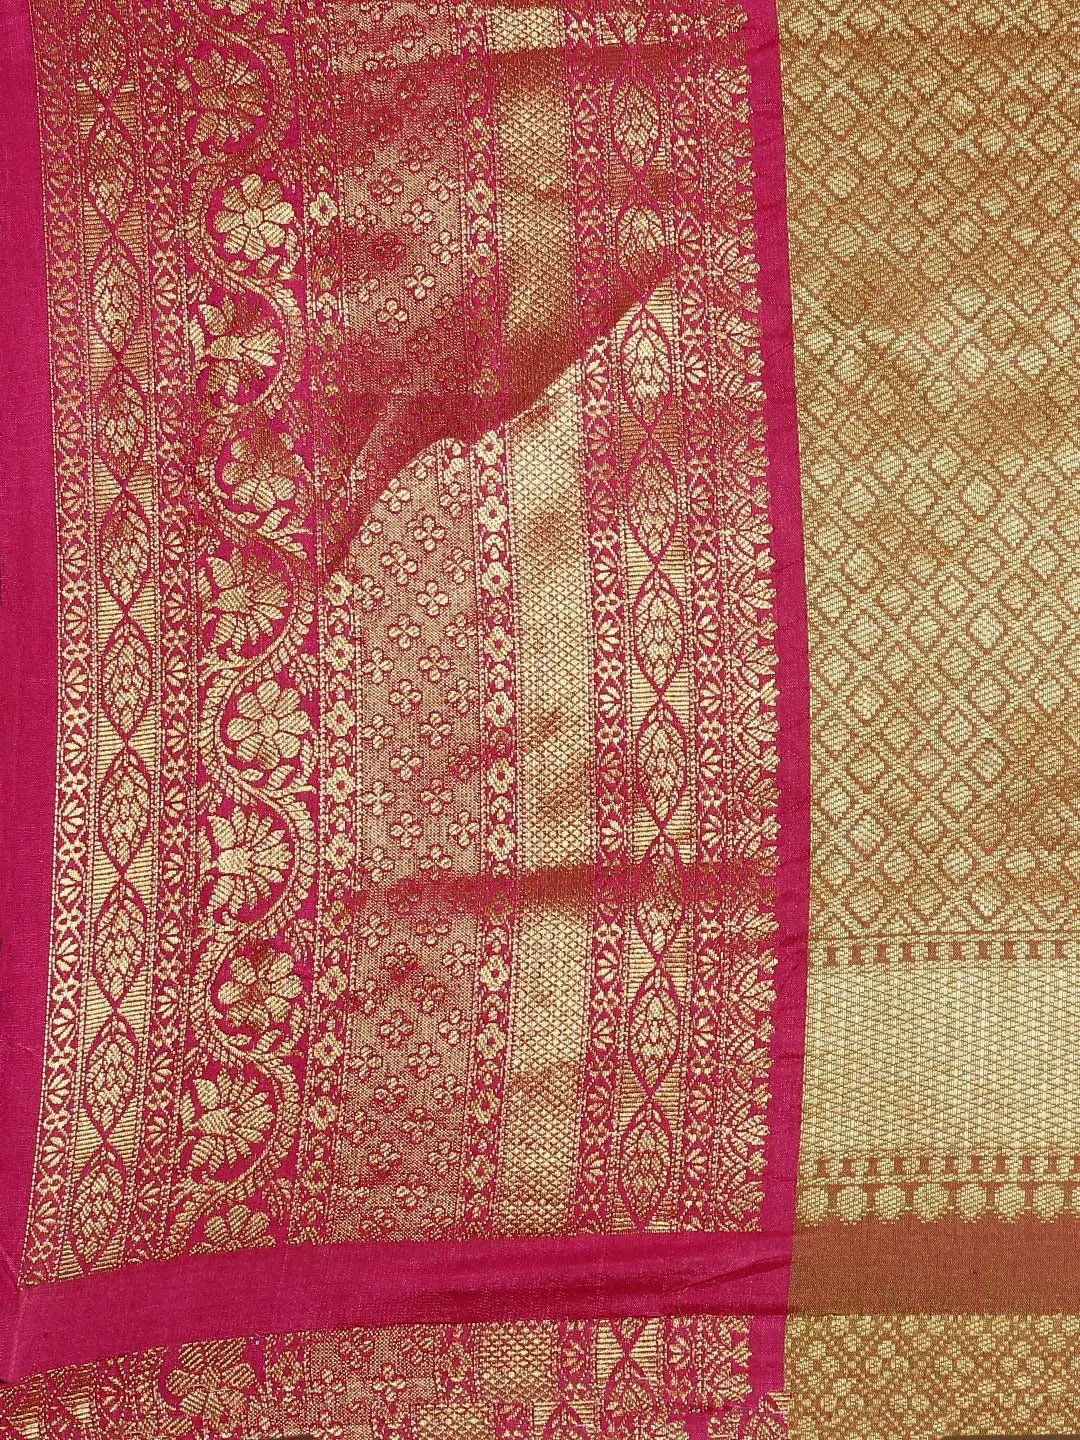  Dharmavaram Soft Silk Festive Wear Saree